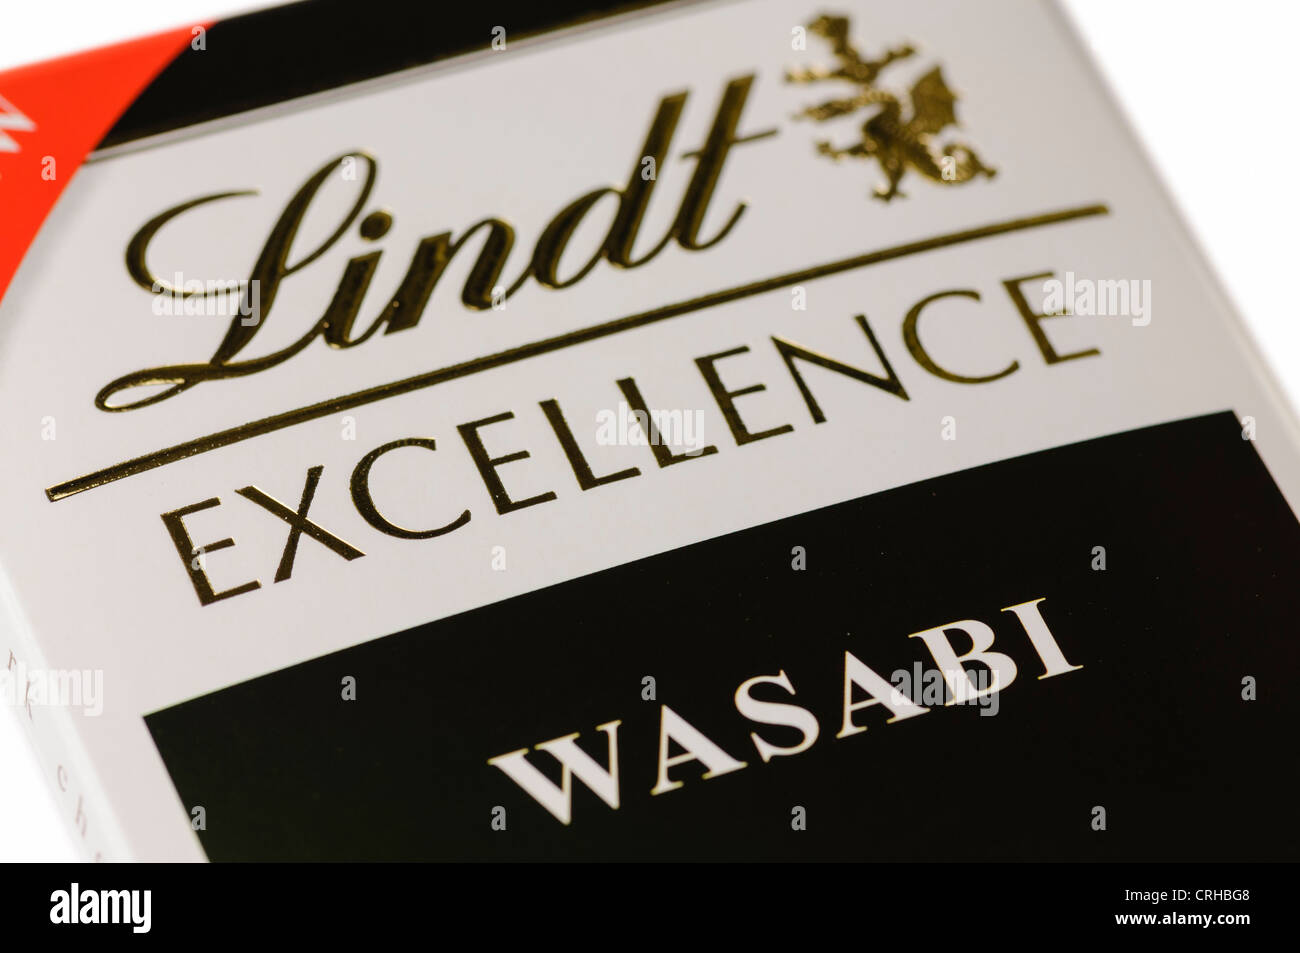 Lindt Excelence wasabi aromatizzato al cioccolato scuro Foto Stock